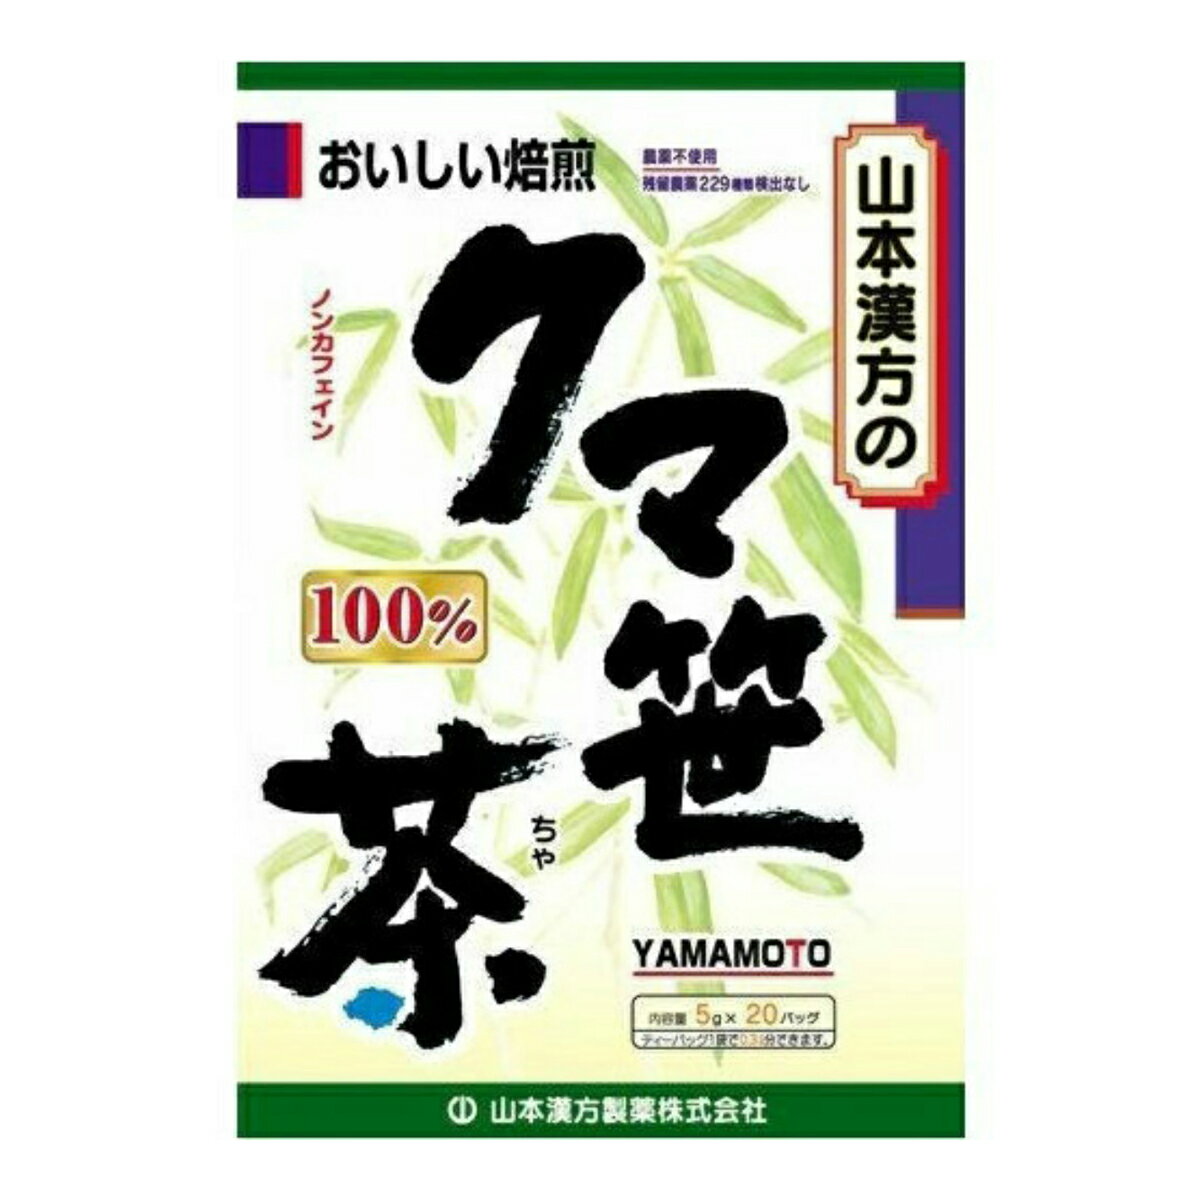 【送料込・まとめ買い×3個セット】山本漢方製薬 クマ笹茶(クマザサ茶) 100% 5g×20包